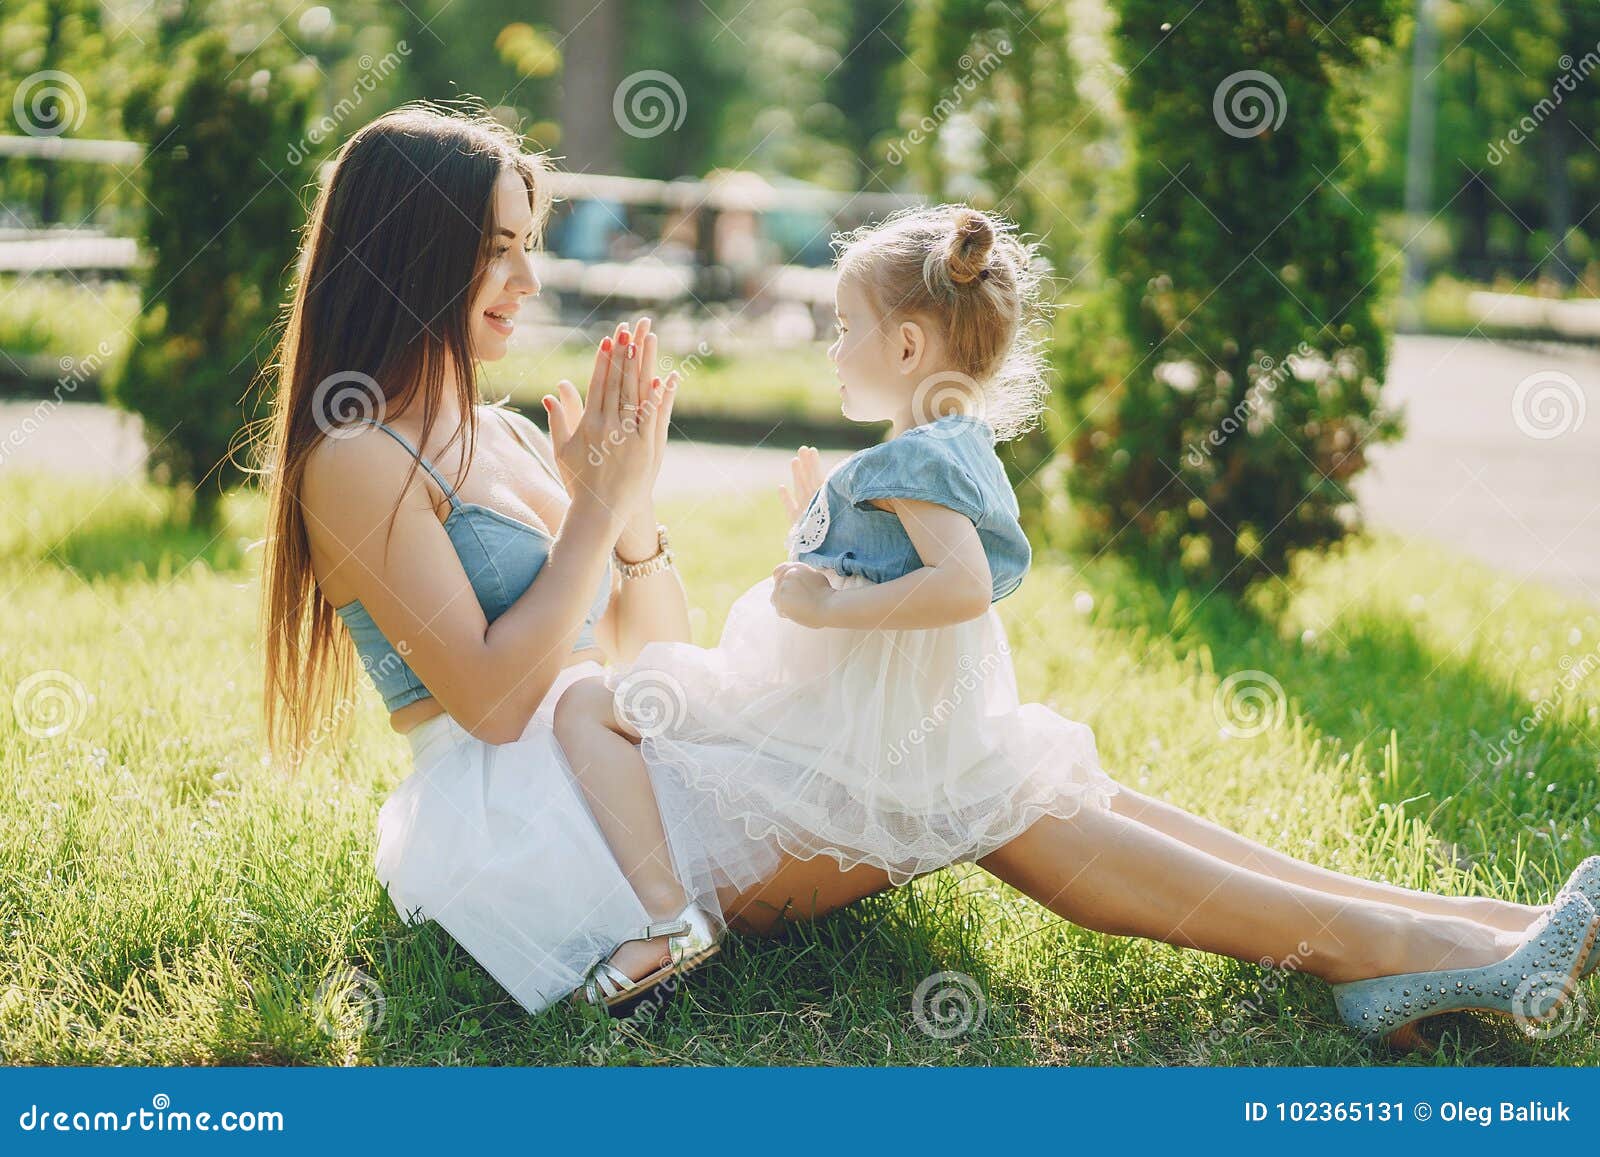 Young mother like. Мама и дочка. Фотосессия мамы с маленькой дочкой. Стильная мама с ребенком. Фотосессия с дочкой на природе.